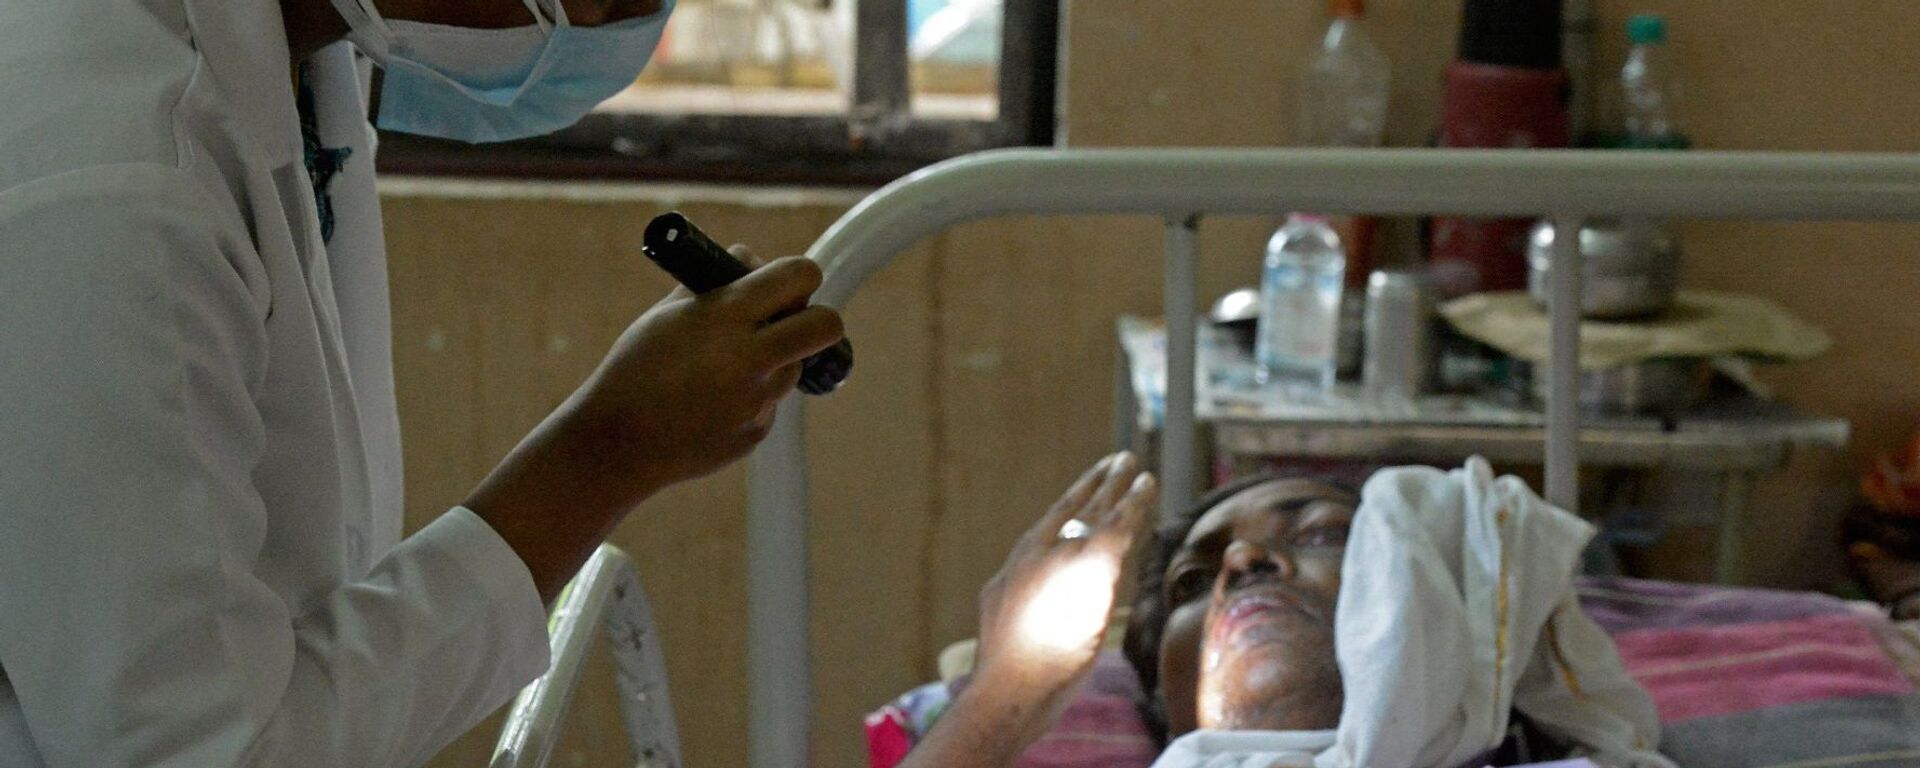 طبيب يفحص مريضا تعافى من فيروس كورونا المستجد وأصيب الآن بالفطر الأسود في جناح بمستشفى حكومي في حيدر أباد، الهند، 21 مايو/ أيار 2021. - سبوتنيك عربي, 1920, 31.12.2021